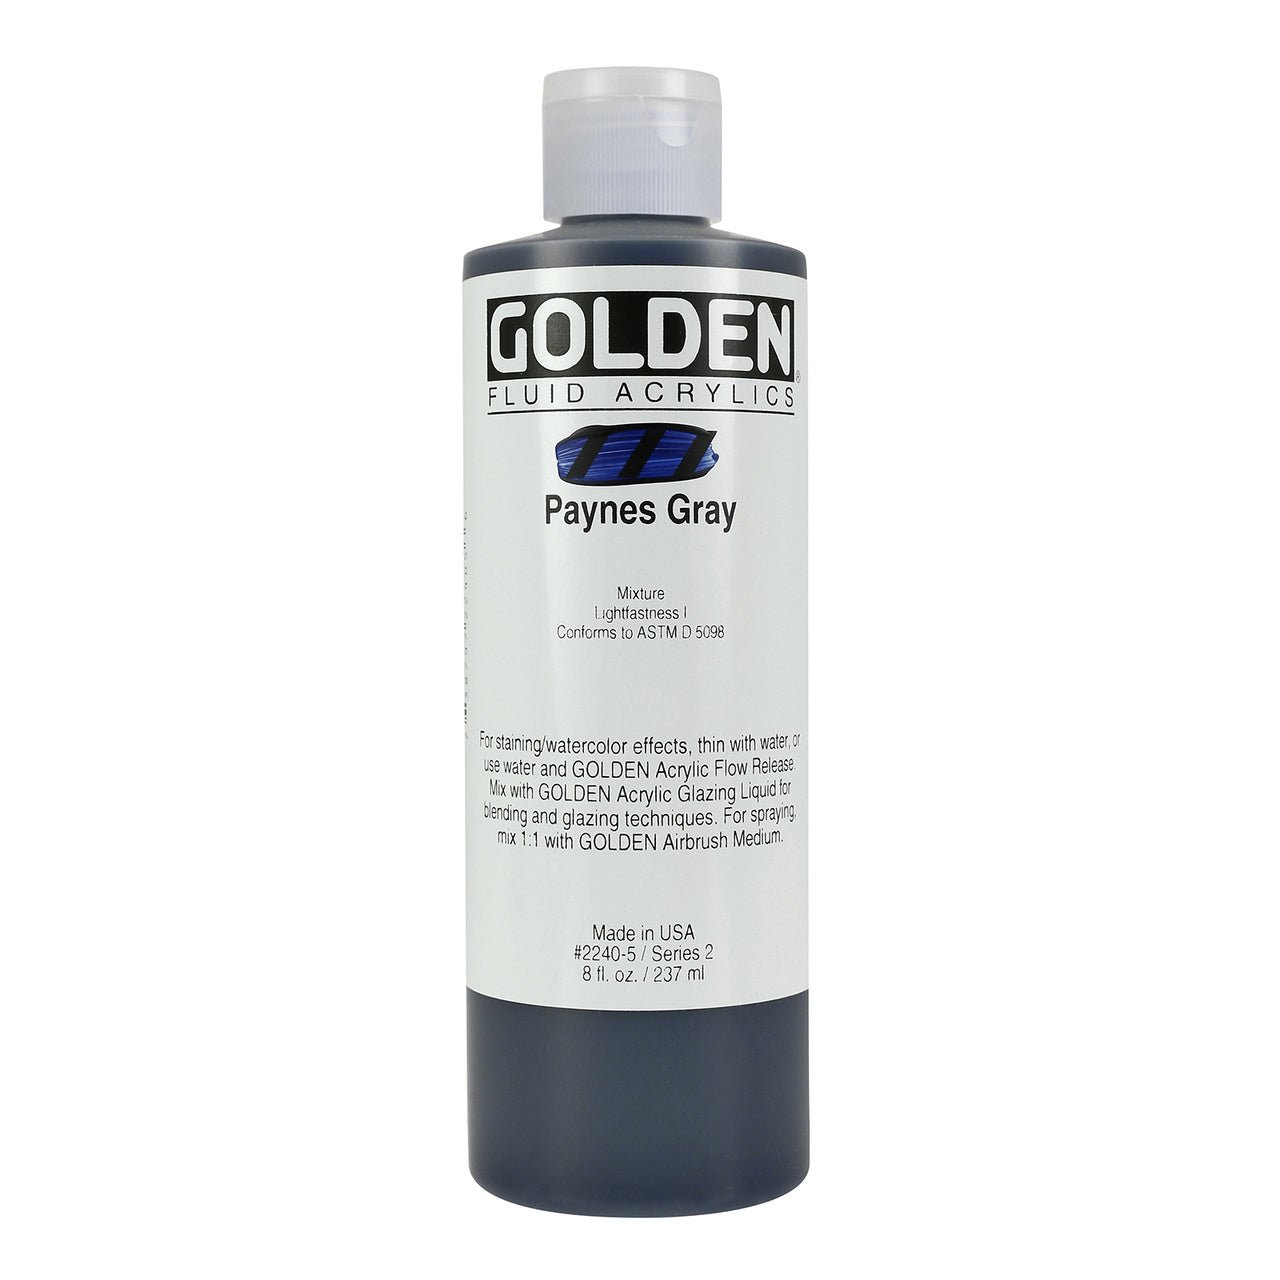 Golden Fluid Acrylic Paynes Gray 8 oz - merriartist.com